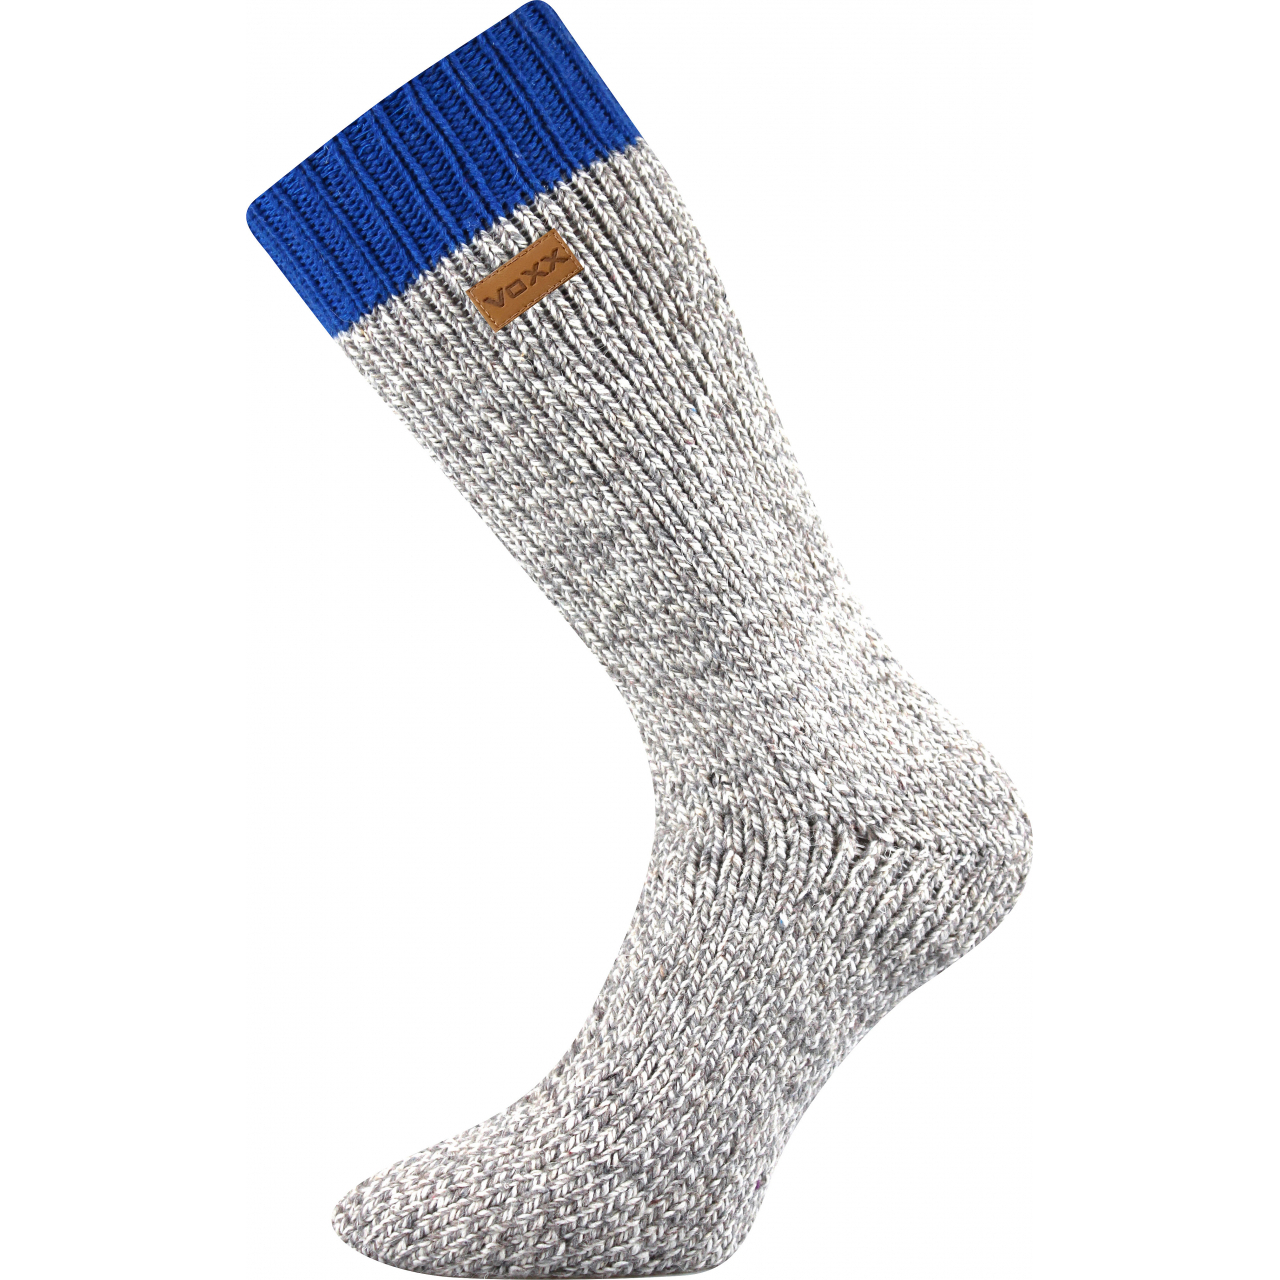 Ponožky unisex termo Voxx Haumea - šedé-modré, 39-42